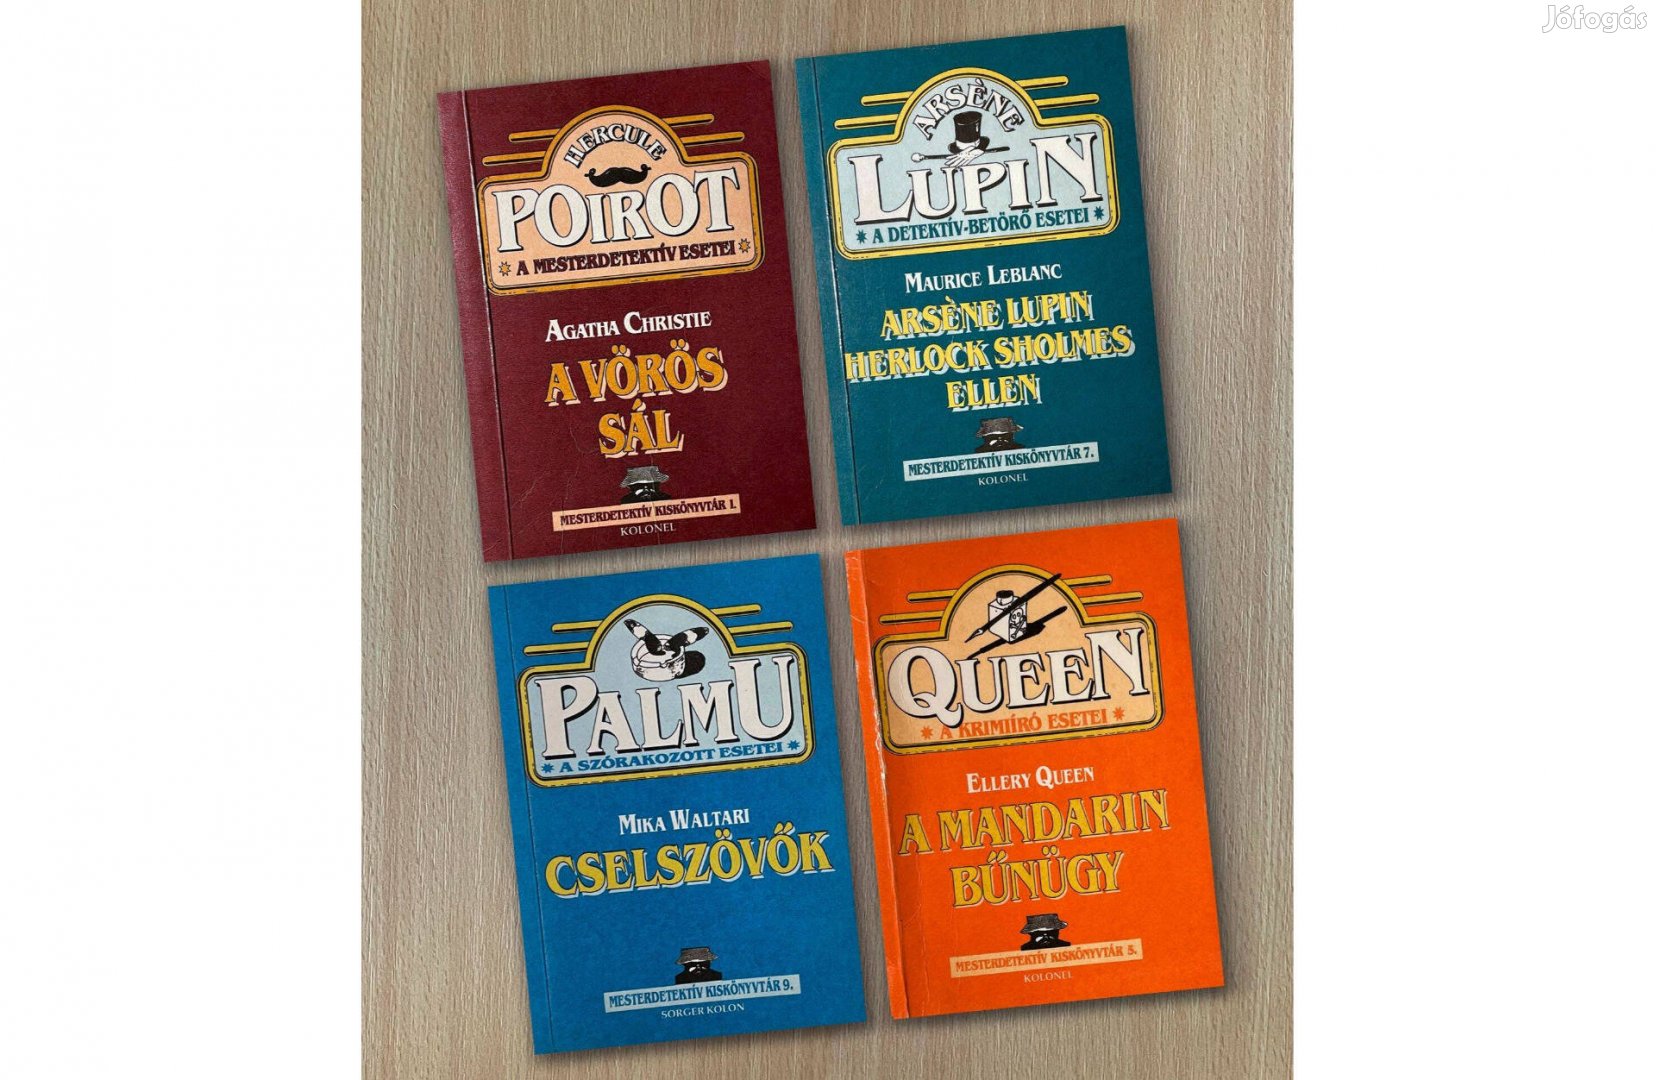 Könyvek a Mesterdetektív kiskönyvtárból: Poirot, Lupin, Palmu, Queen